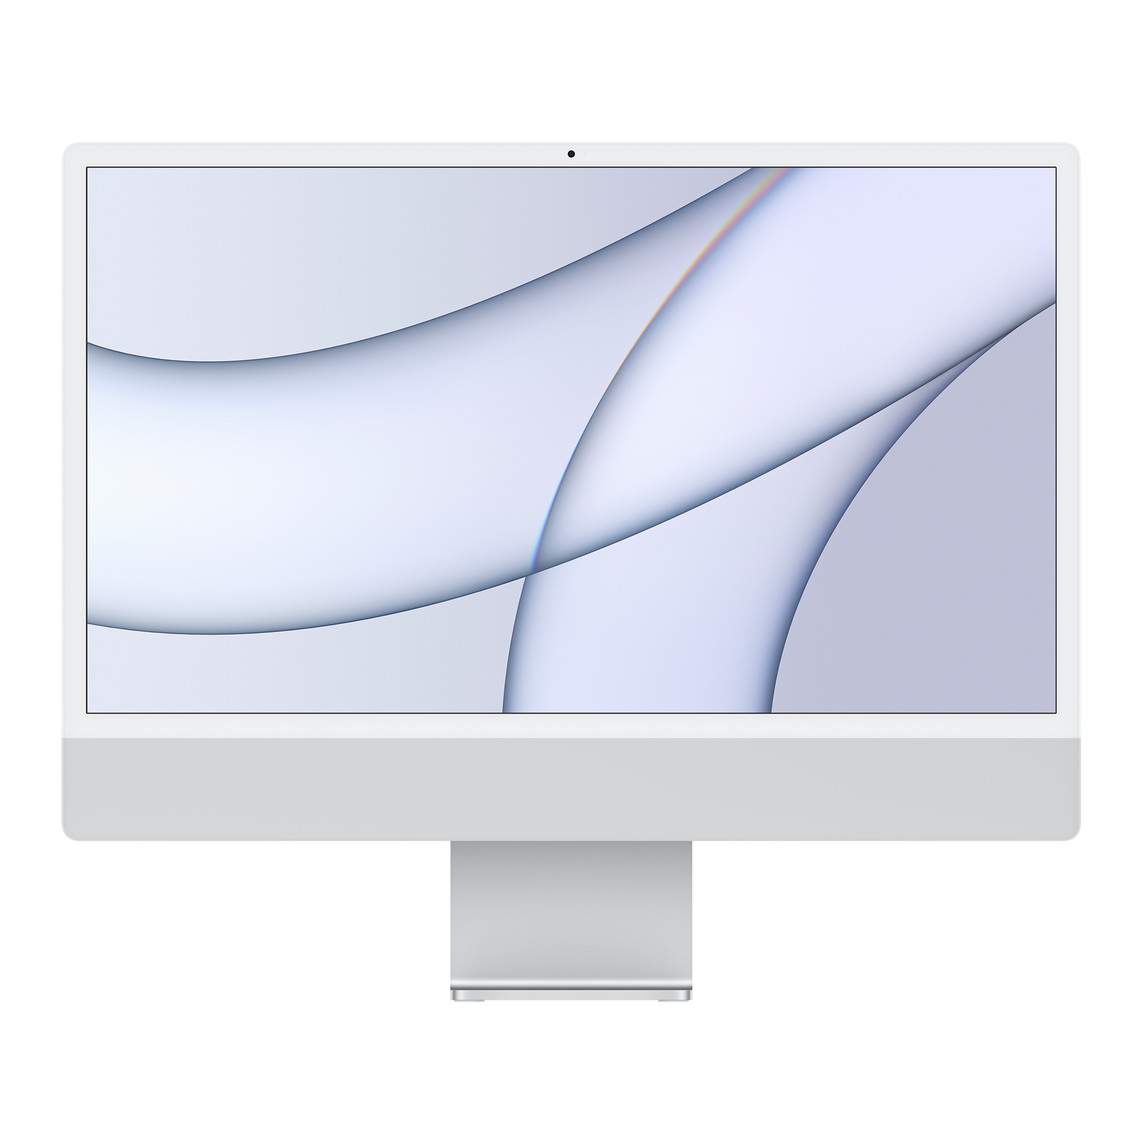 Un iMac visto da davanti, bordo bianco attorno allo schermo, guscio color argento e sostegno in alluminio